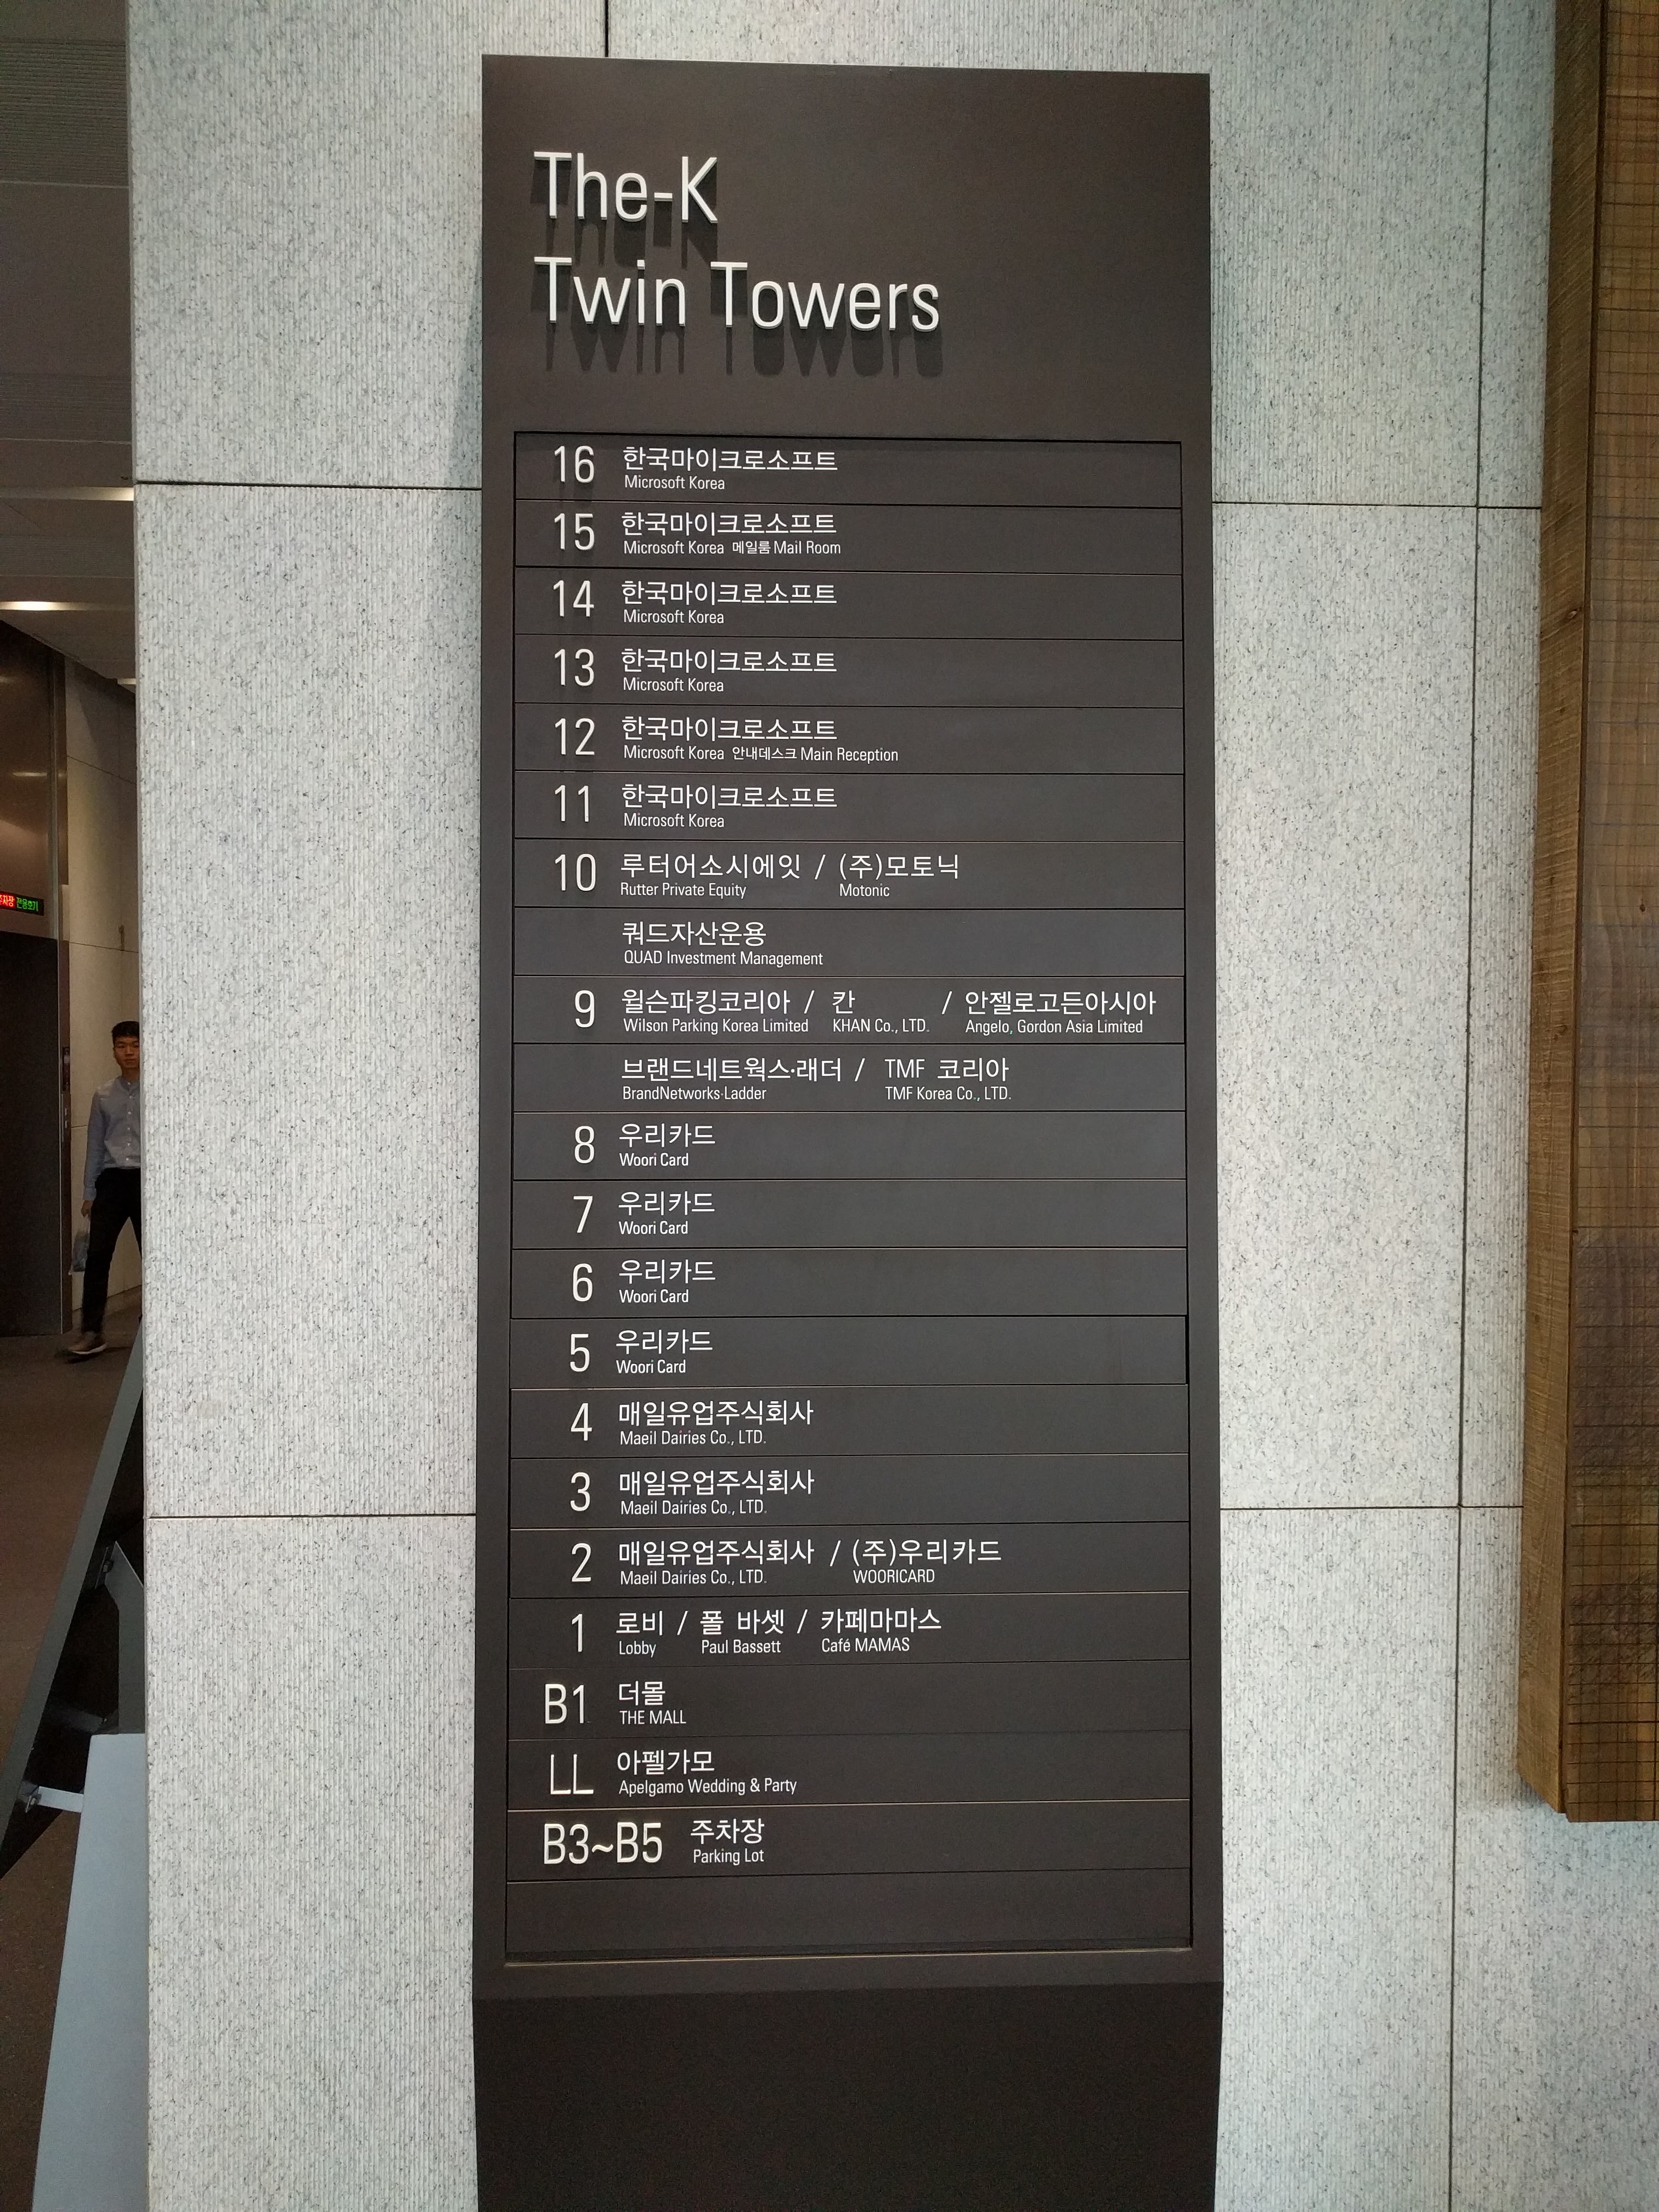 Microsoft Korea owns 6 floors from level 11 - 16